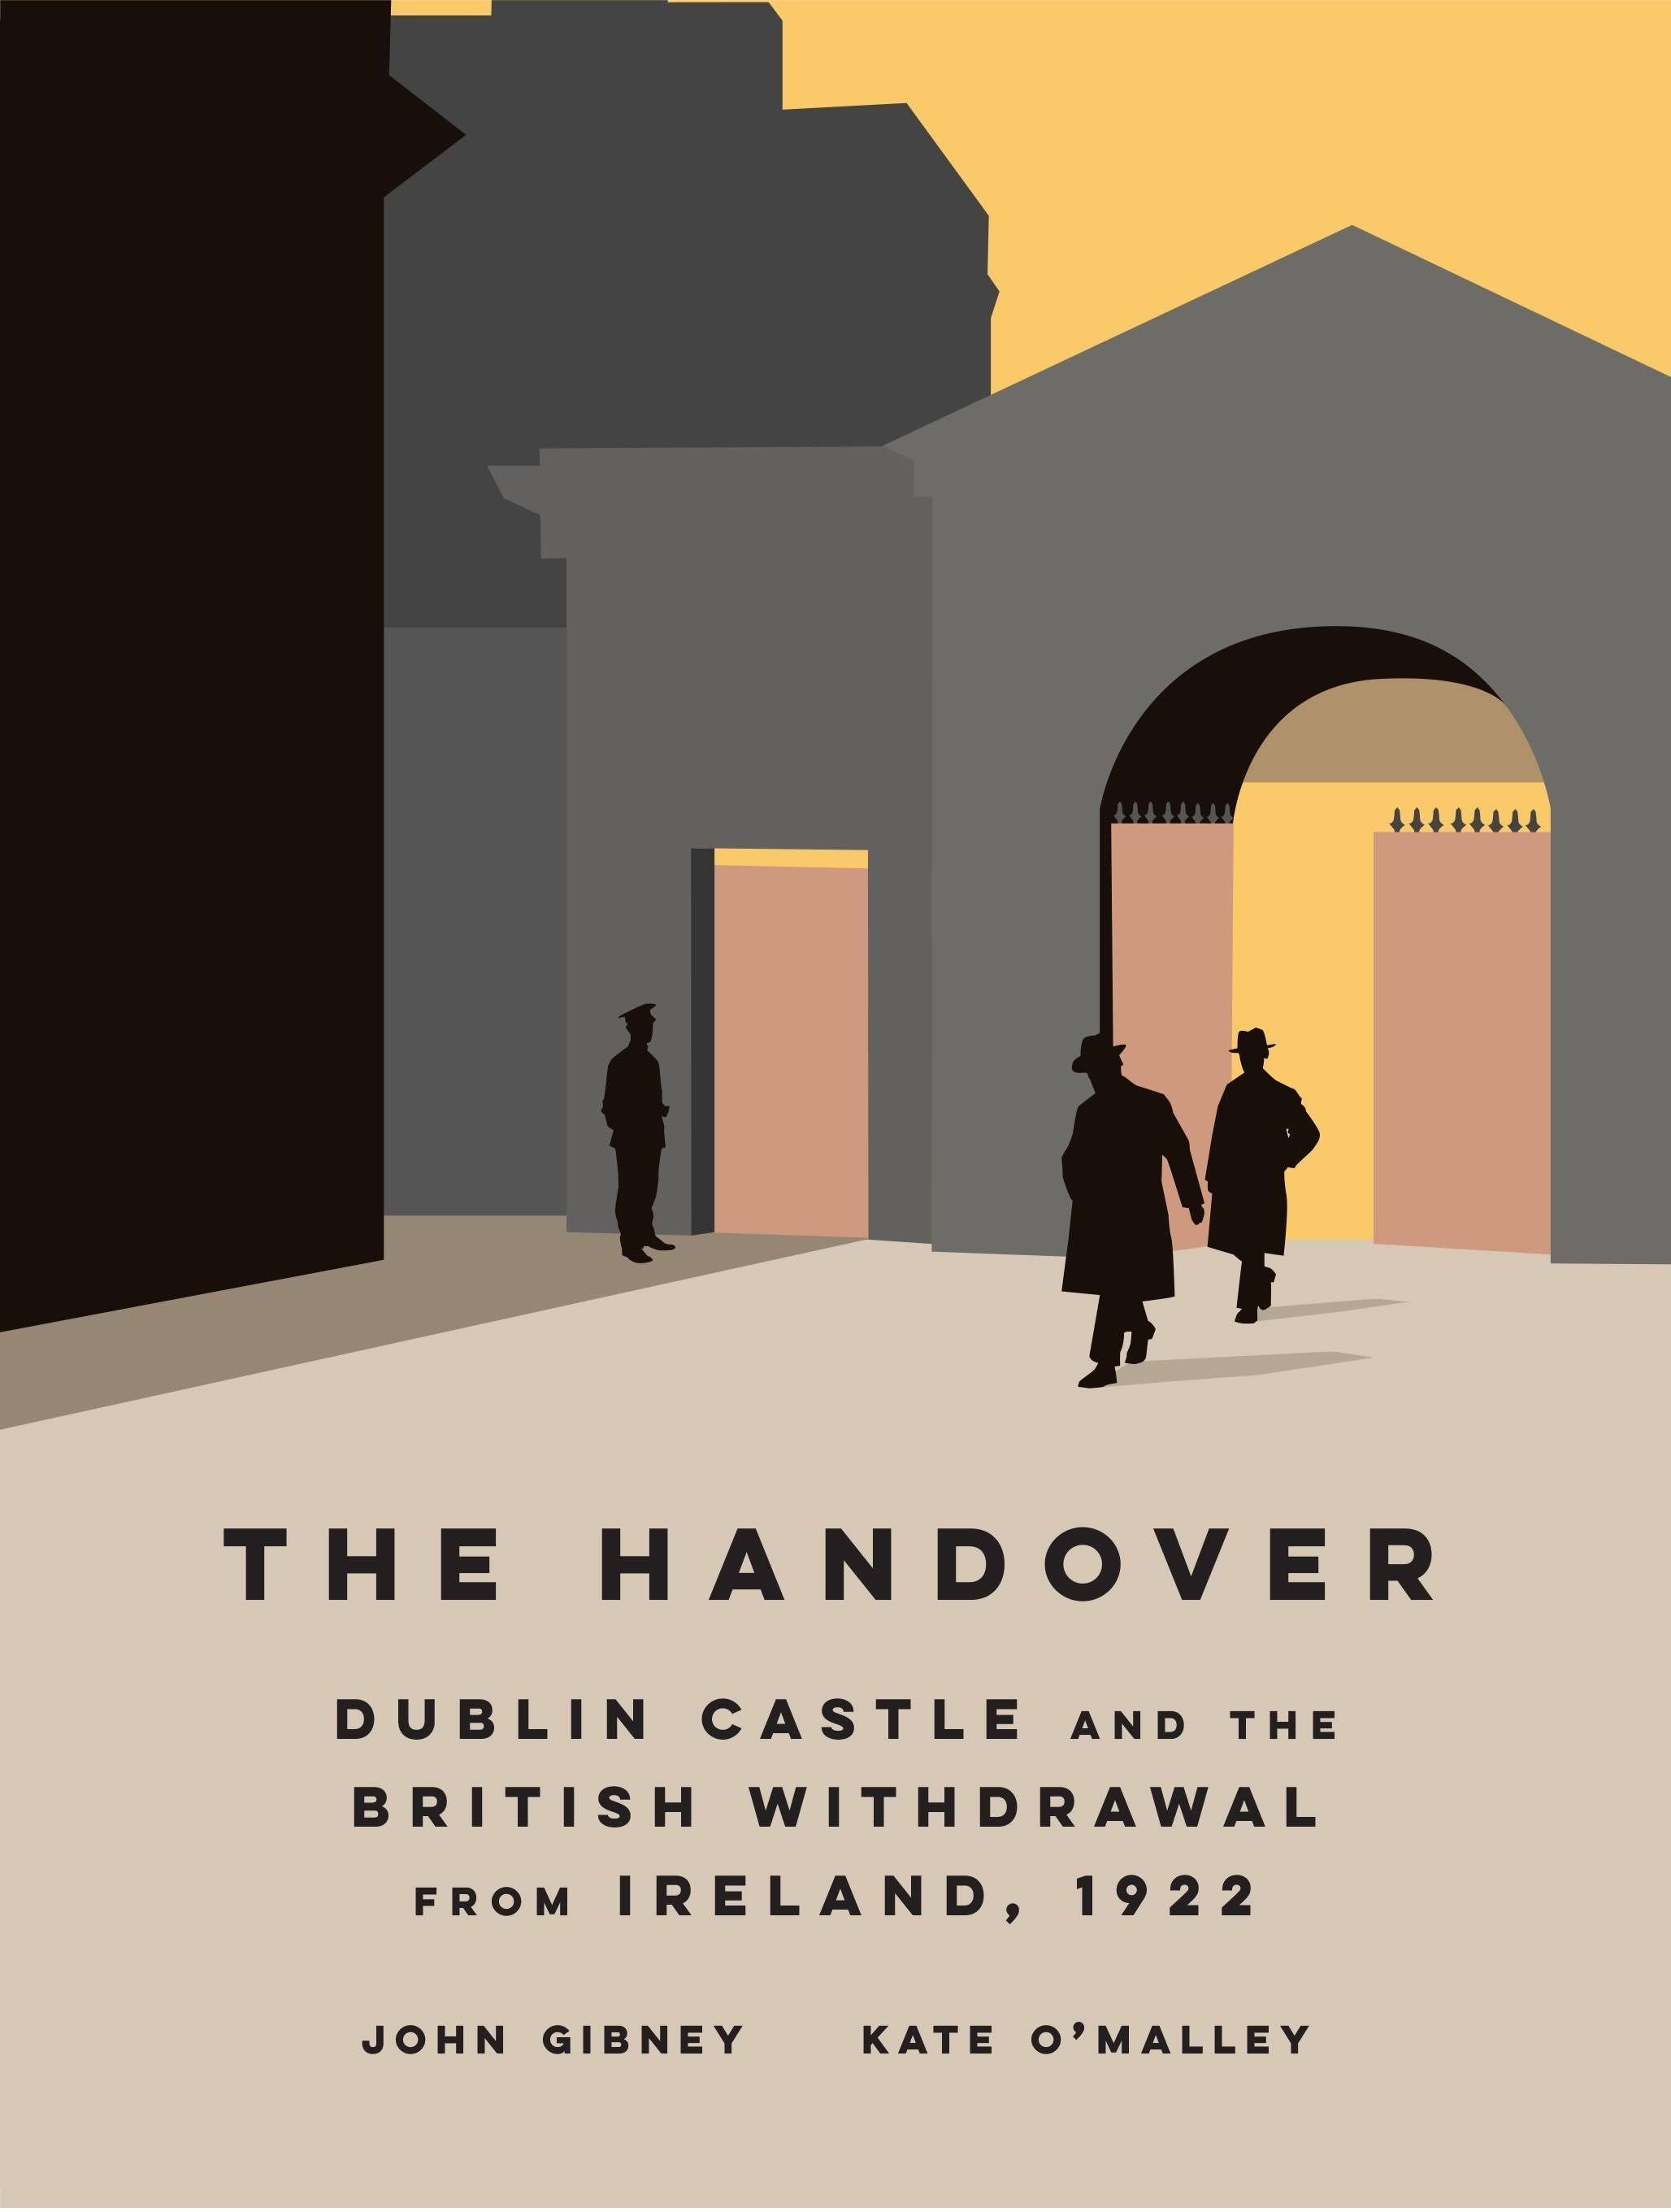 The Handover by John Gibney